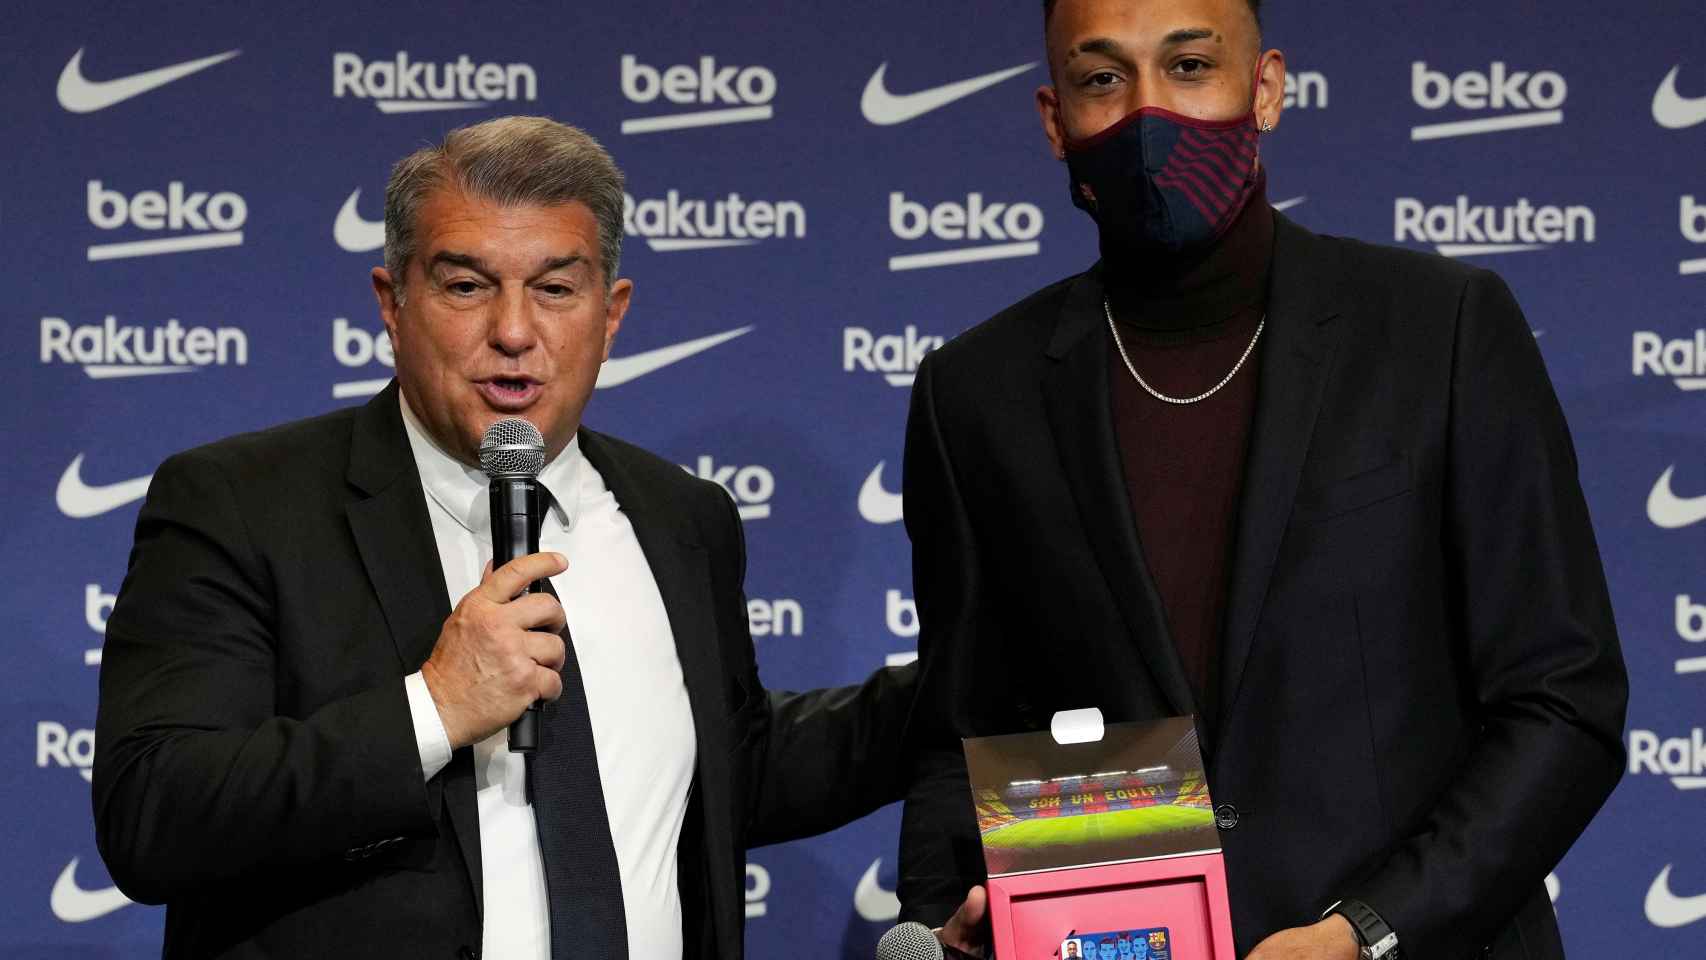 Pierre Emerick Aubameyang recibe su carnet de socio del FC Barcelona